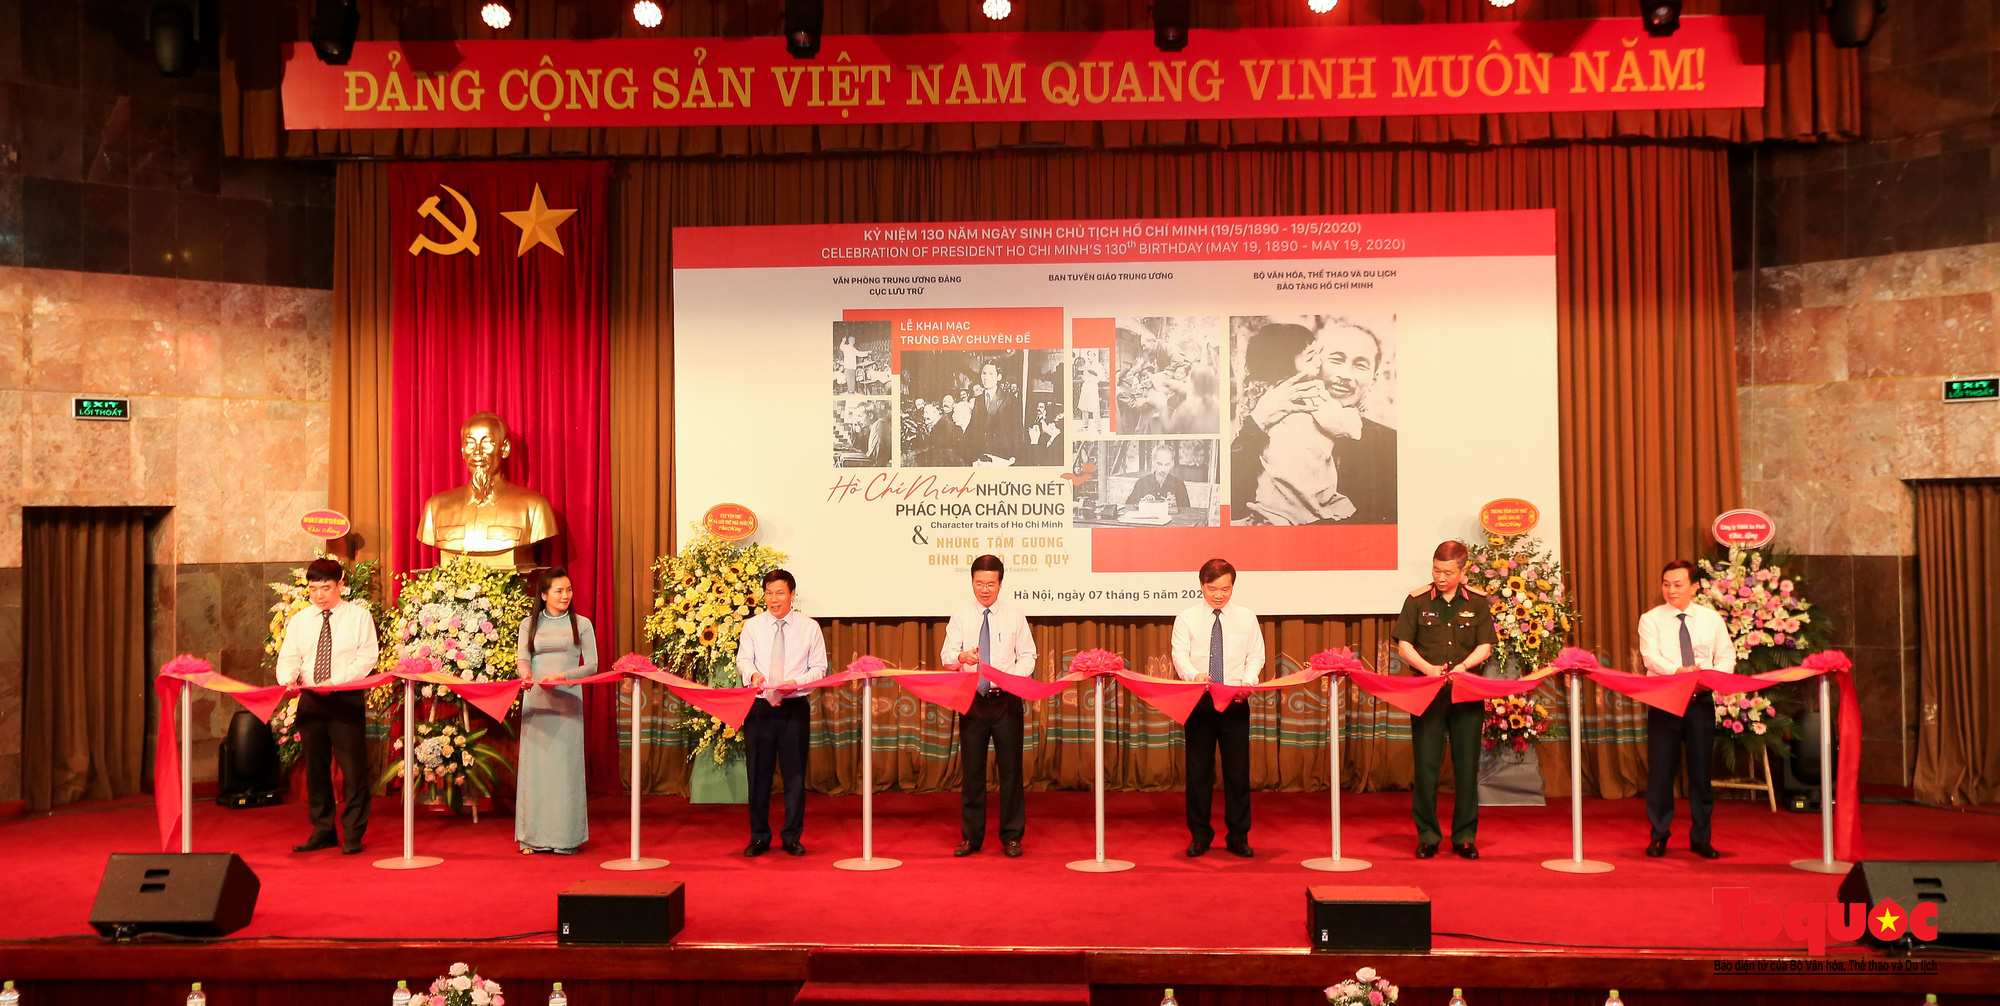 Khai mạc trưng bày chuyên đề: Hồ Chí Minh - Những nét phác họa chân dung; Những tấm gương bình dị mà cao quý  - Ảnh 3.